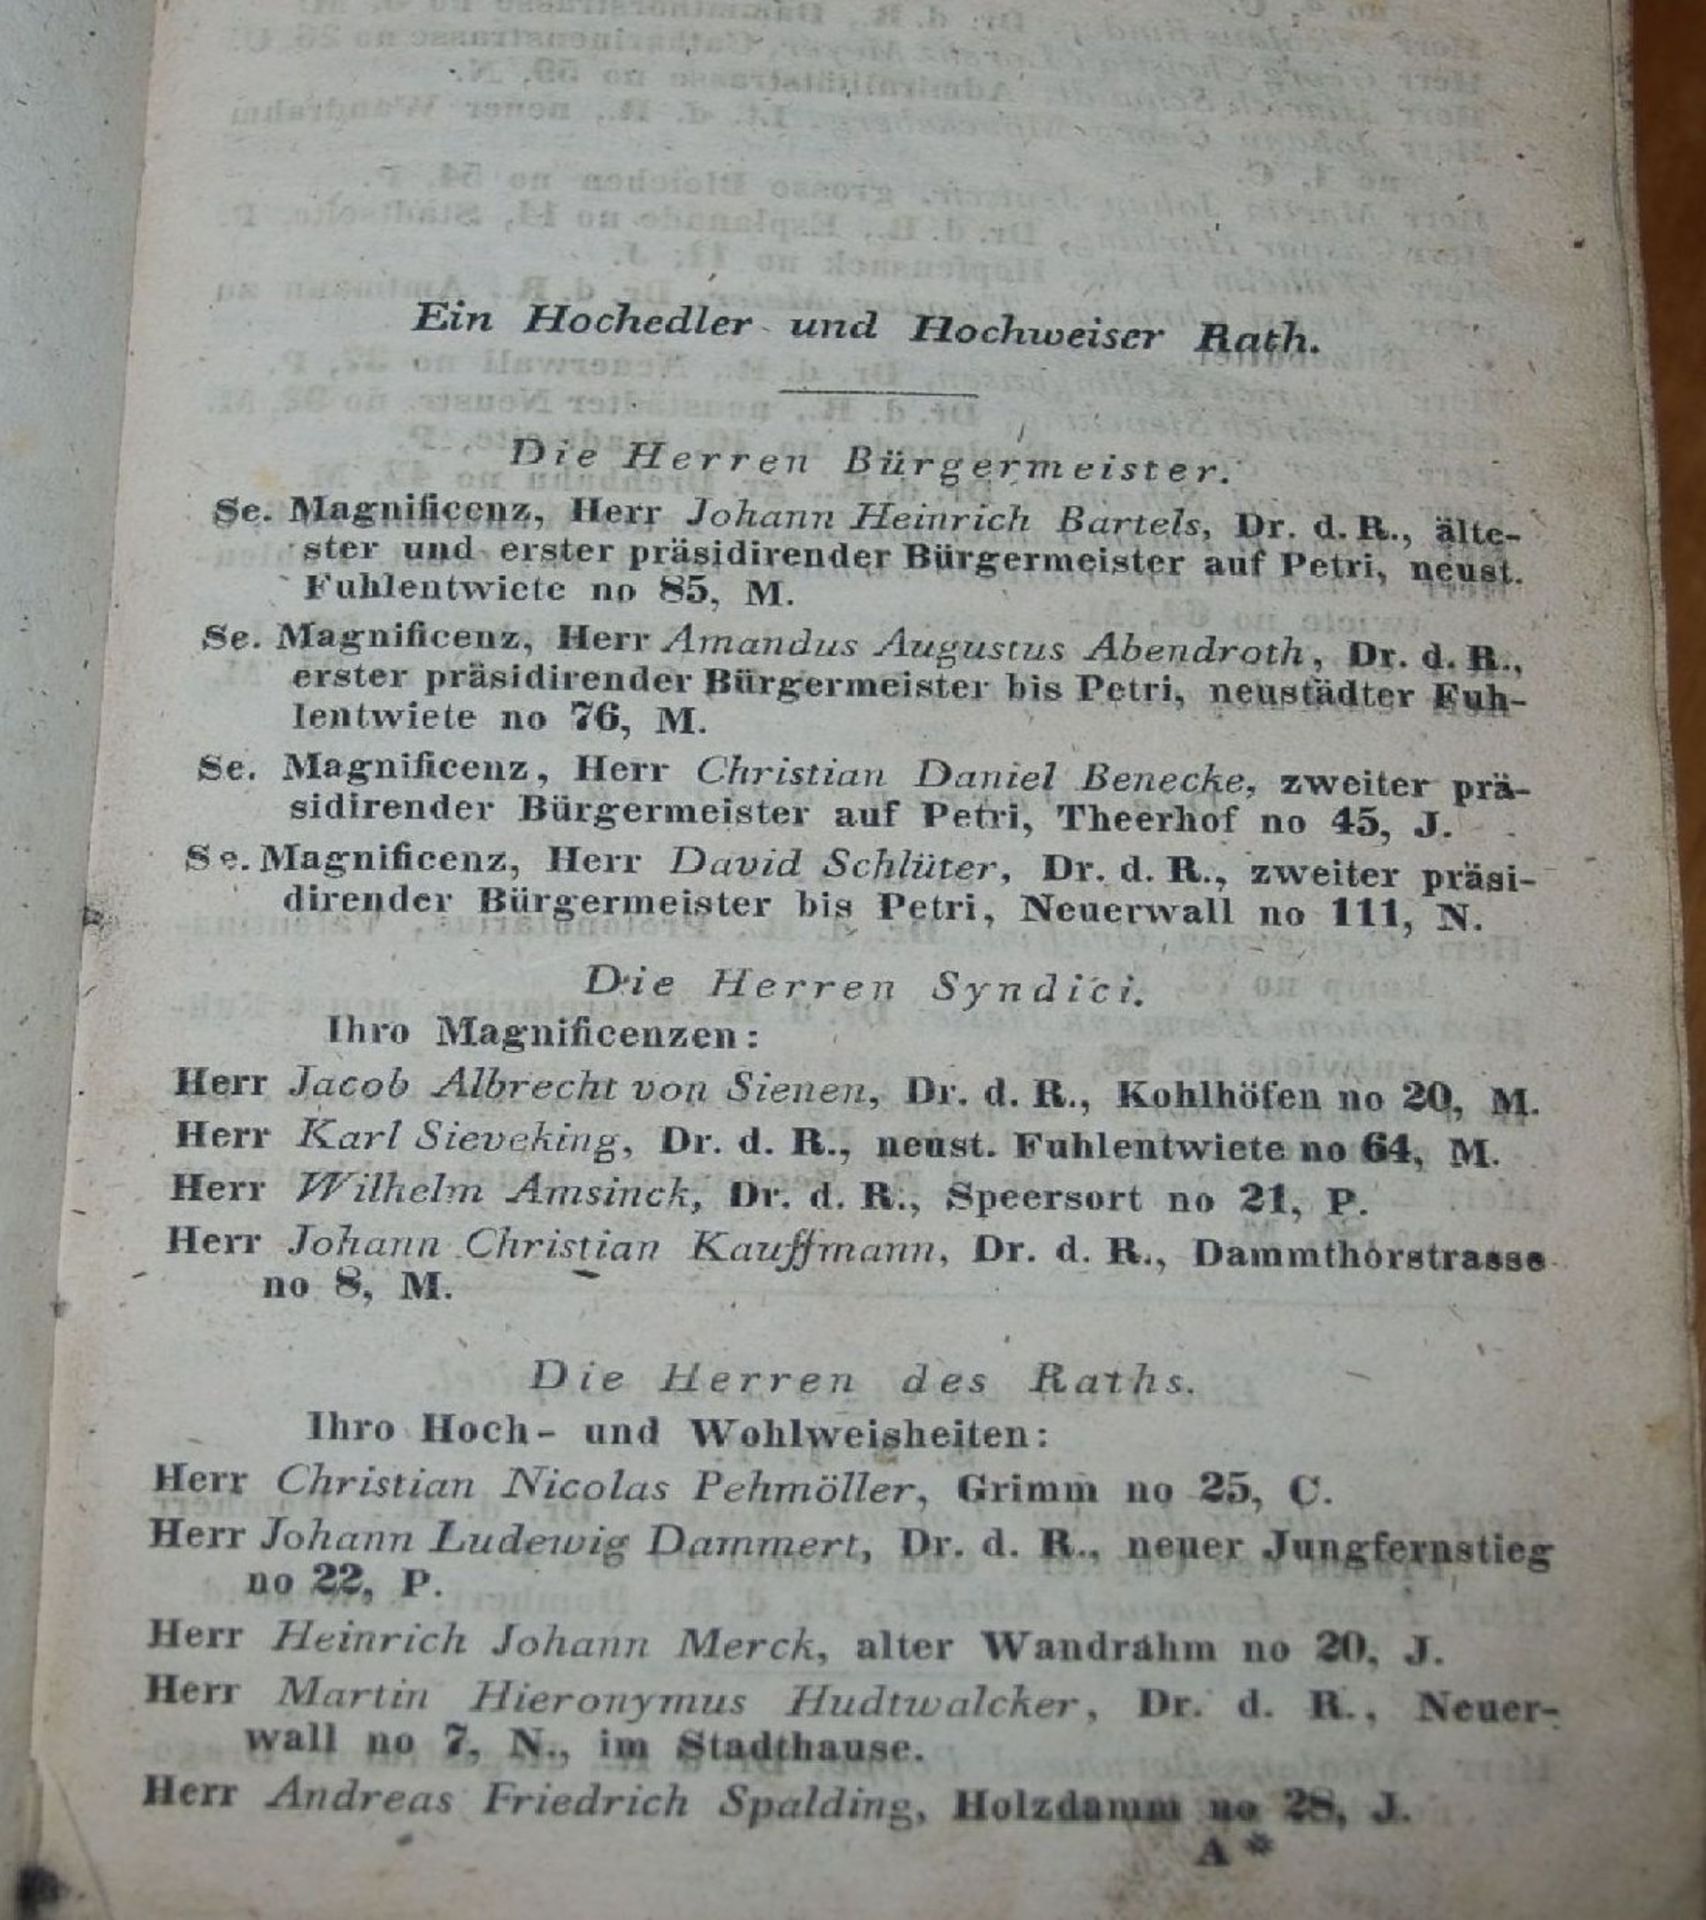 Hamburgisches Adress-Buch 1836, Bibliothekseinband, seitl. beschriftet, 20x13 cm, H-6,5 cm- - -22.61 - Bild 3 aus 9